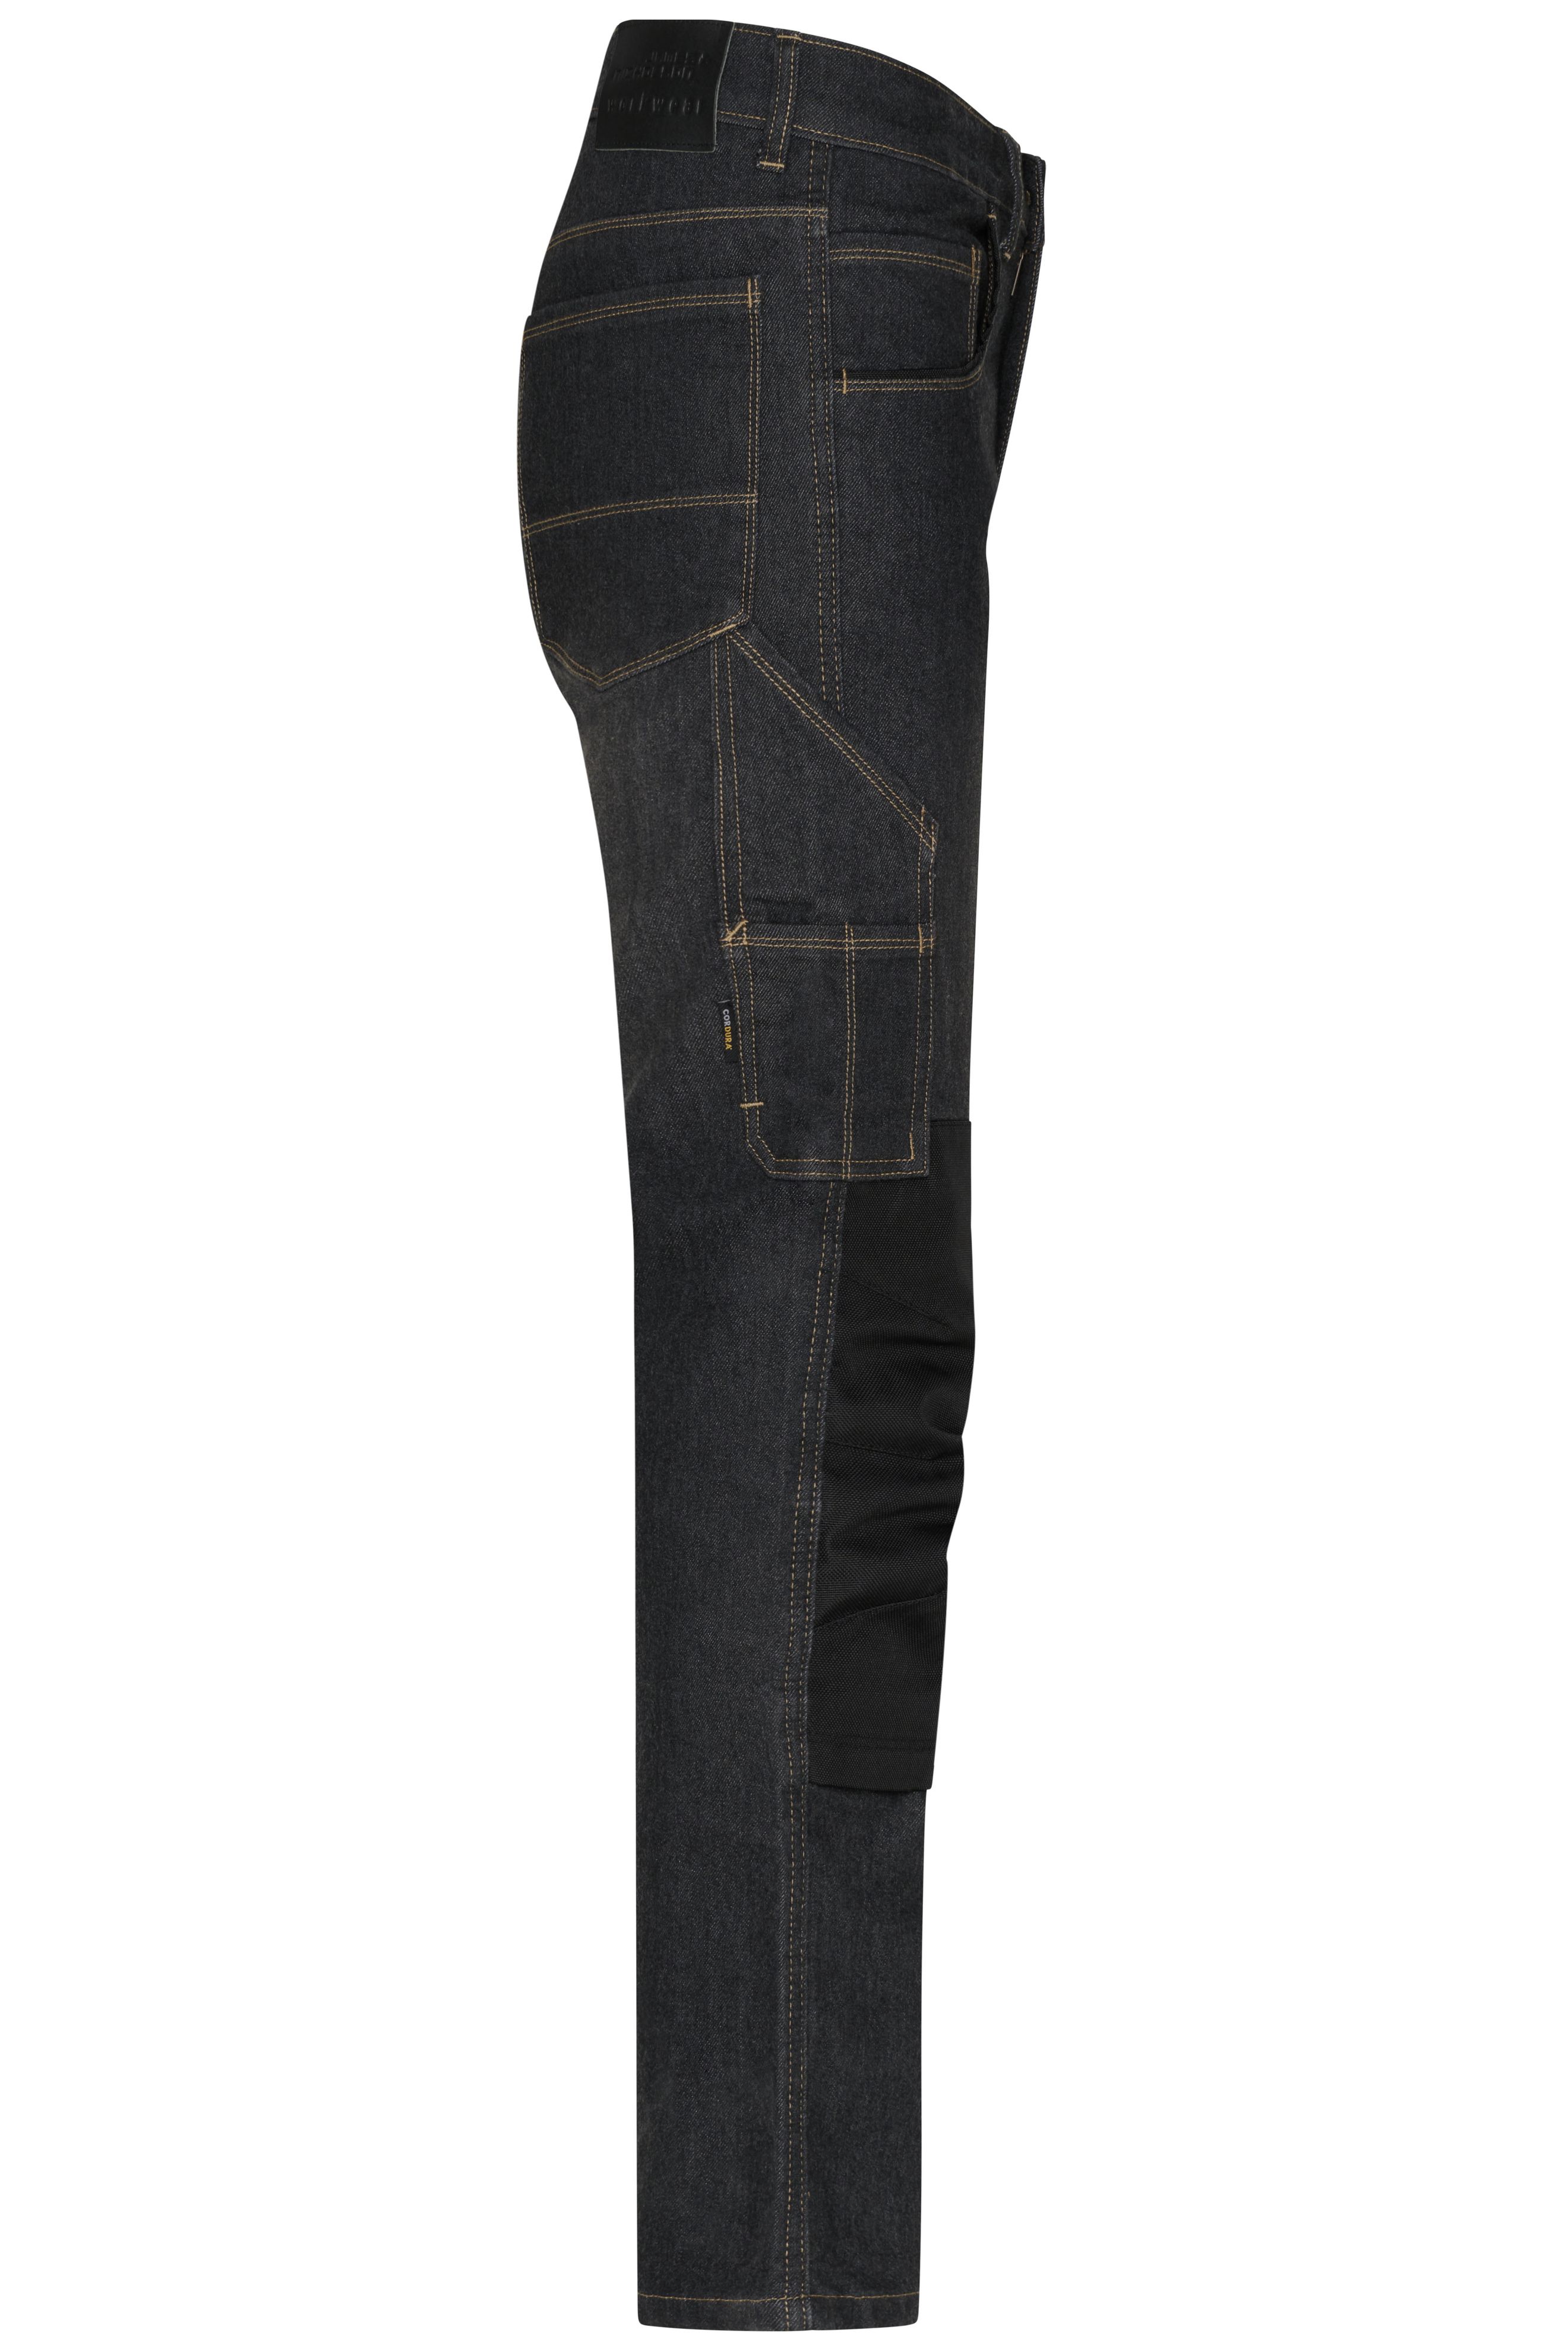 Workwear Stretch-Jeans JN875 Jeans-Hose in gerader Schnittführung mit vielen Details